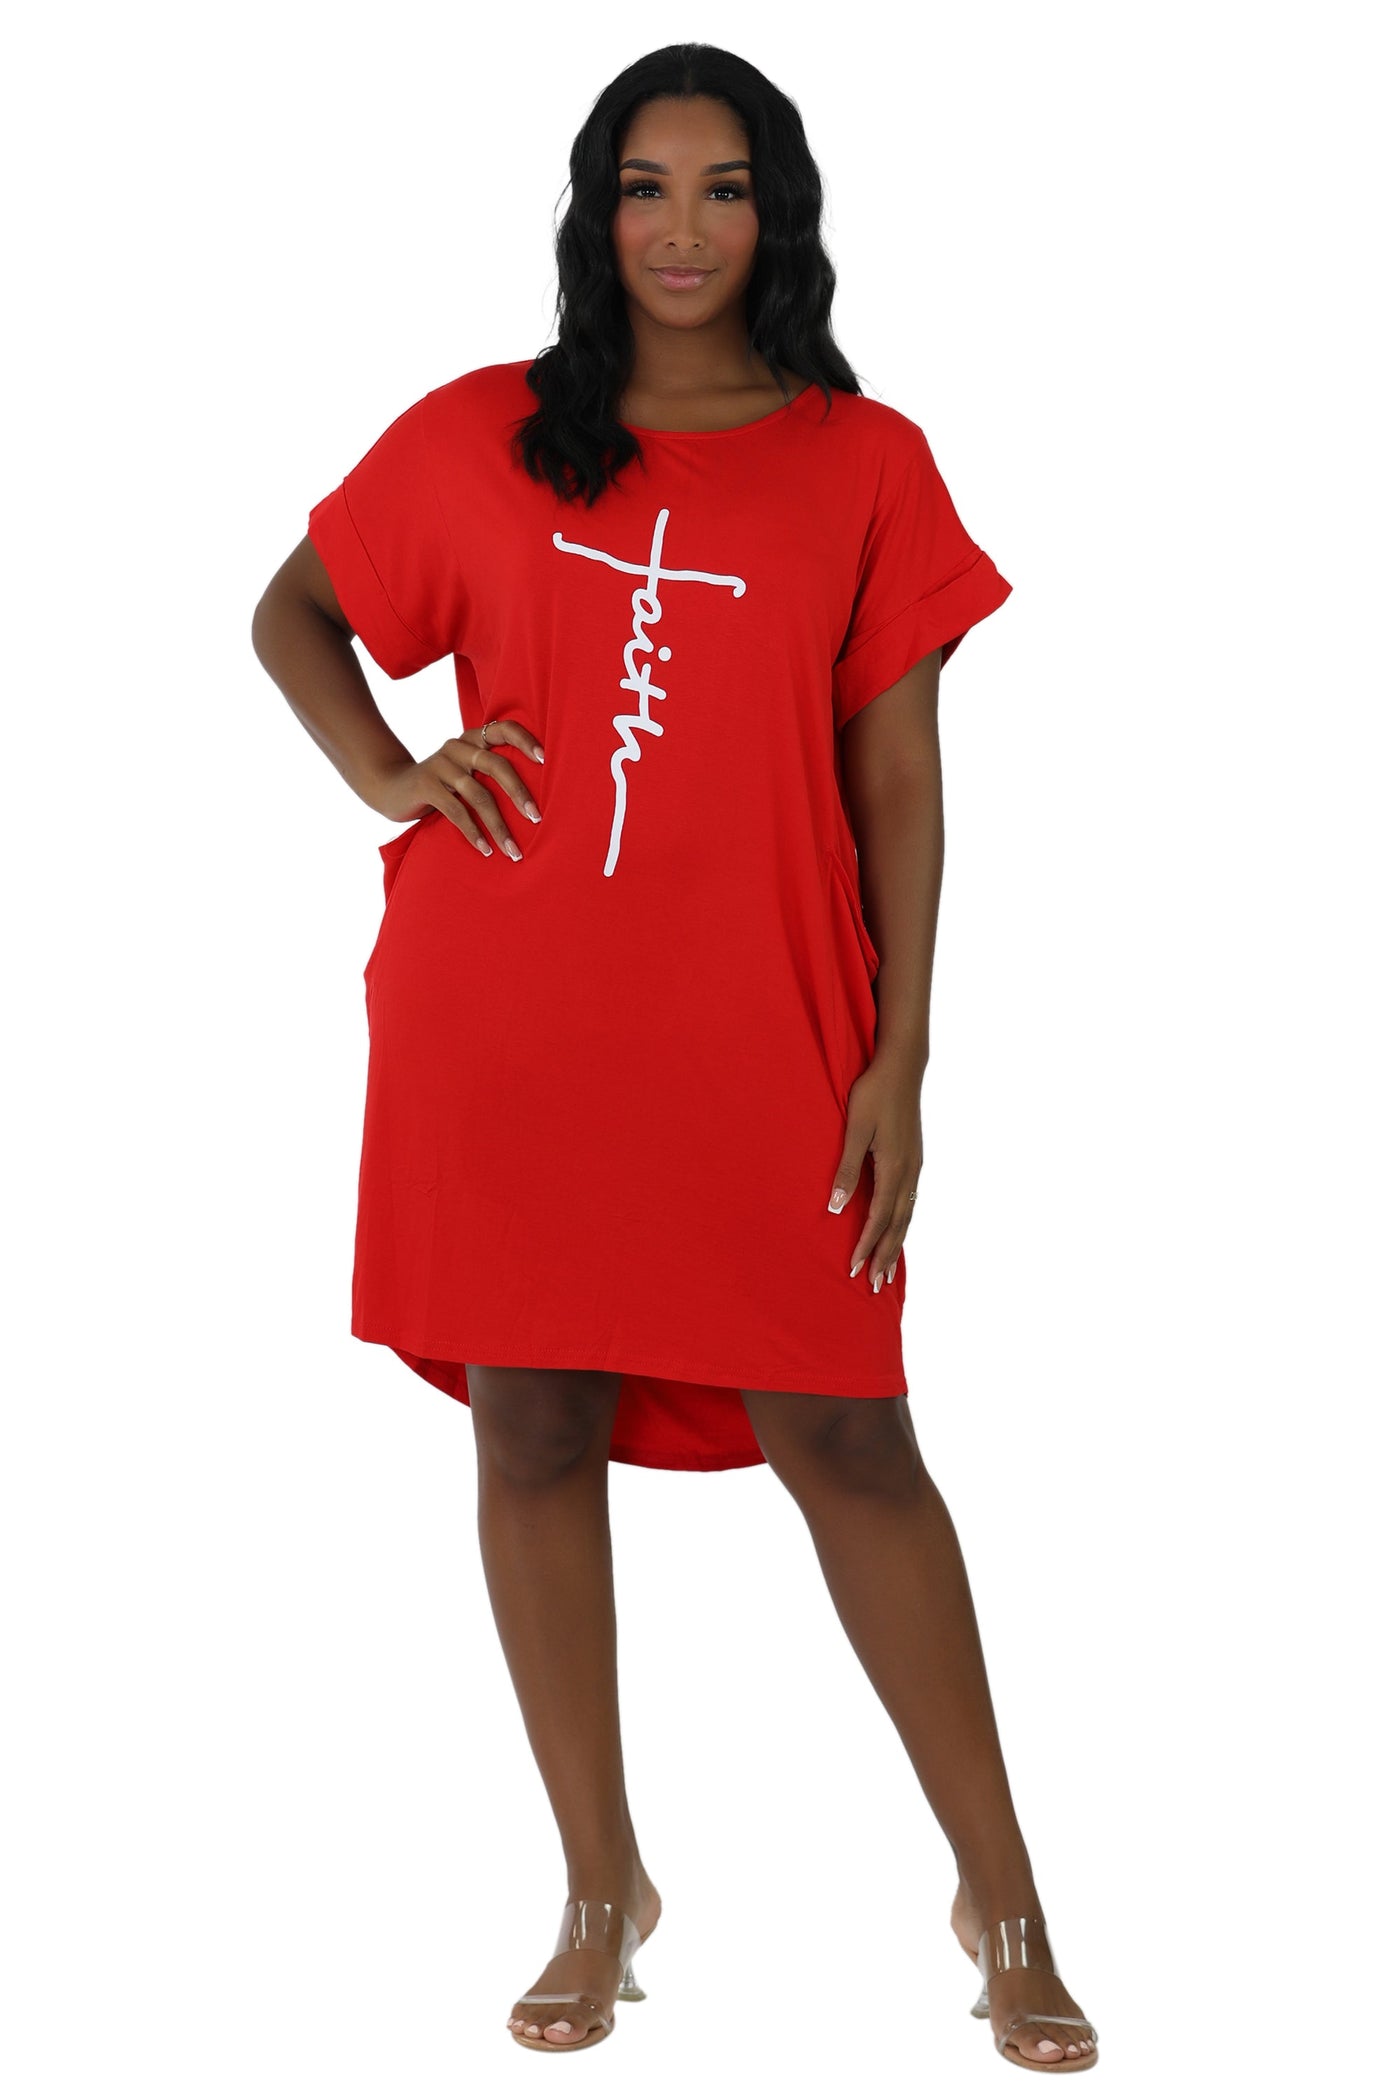 Mid-Length "Faith" Knitted Short Sleeve Dress 5555